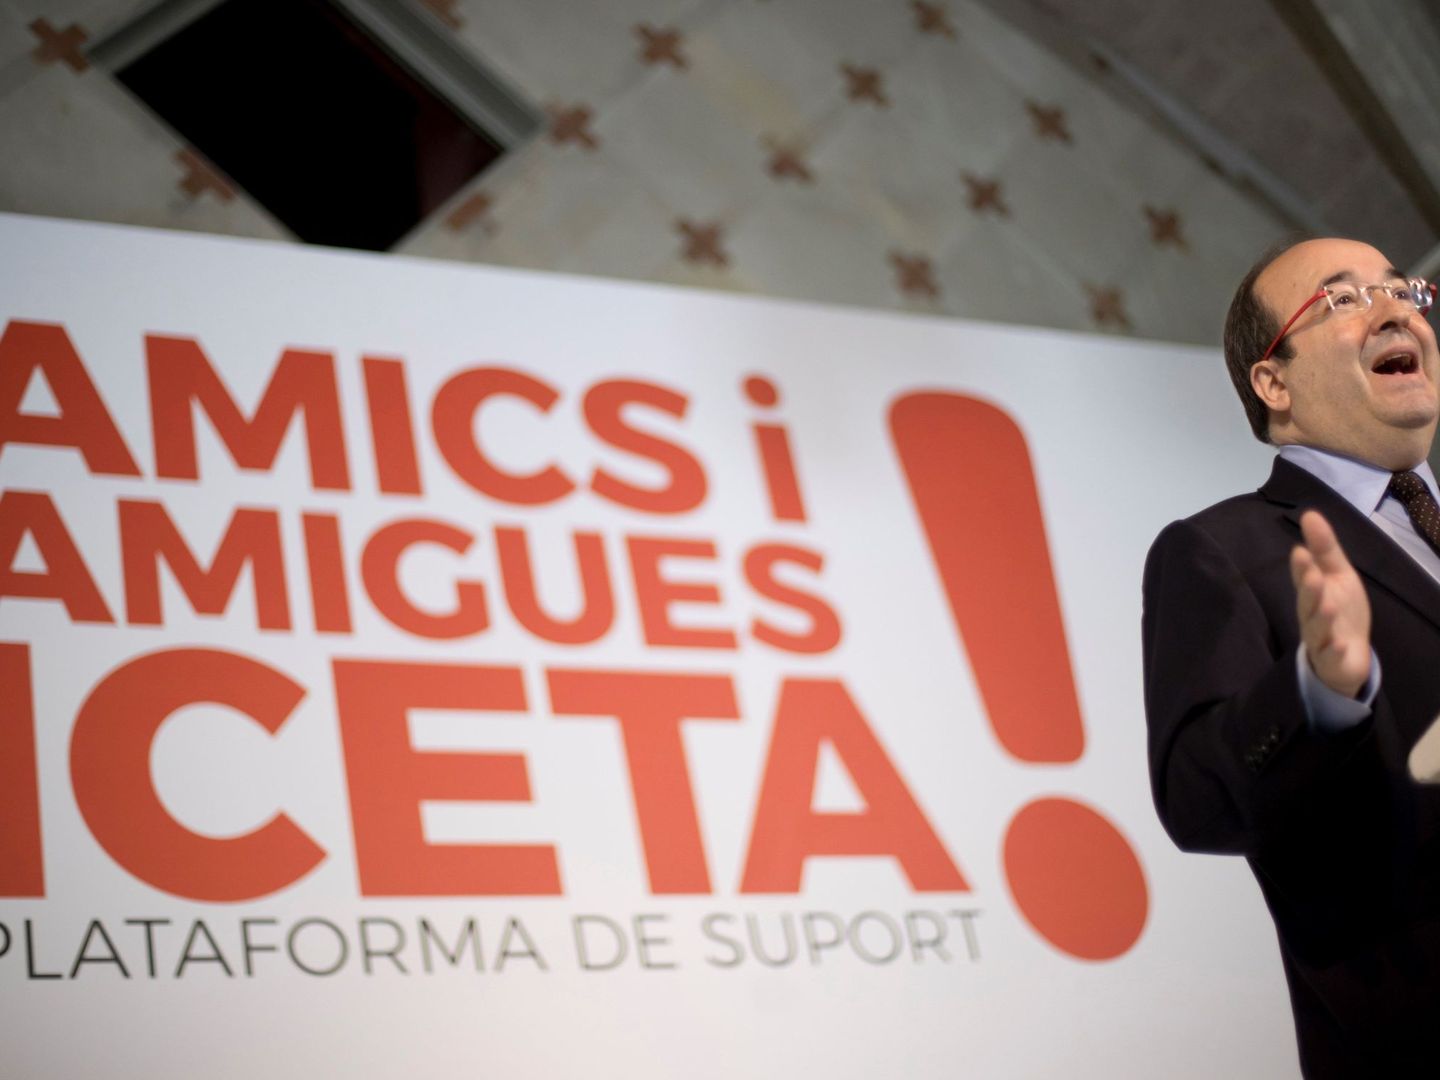 El candidato del PSC, Miquel Iceta, presenta la plataforma de apoyo a su campaña. (EFE)